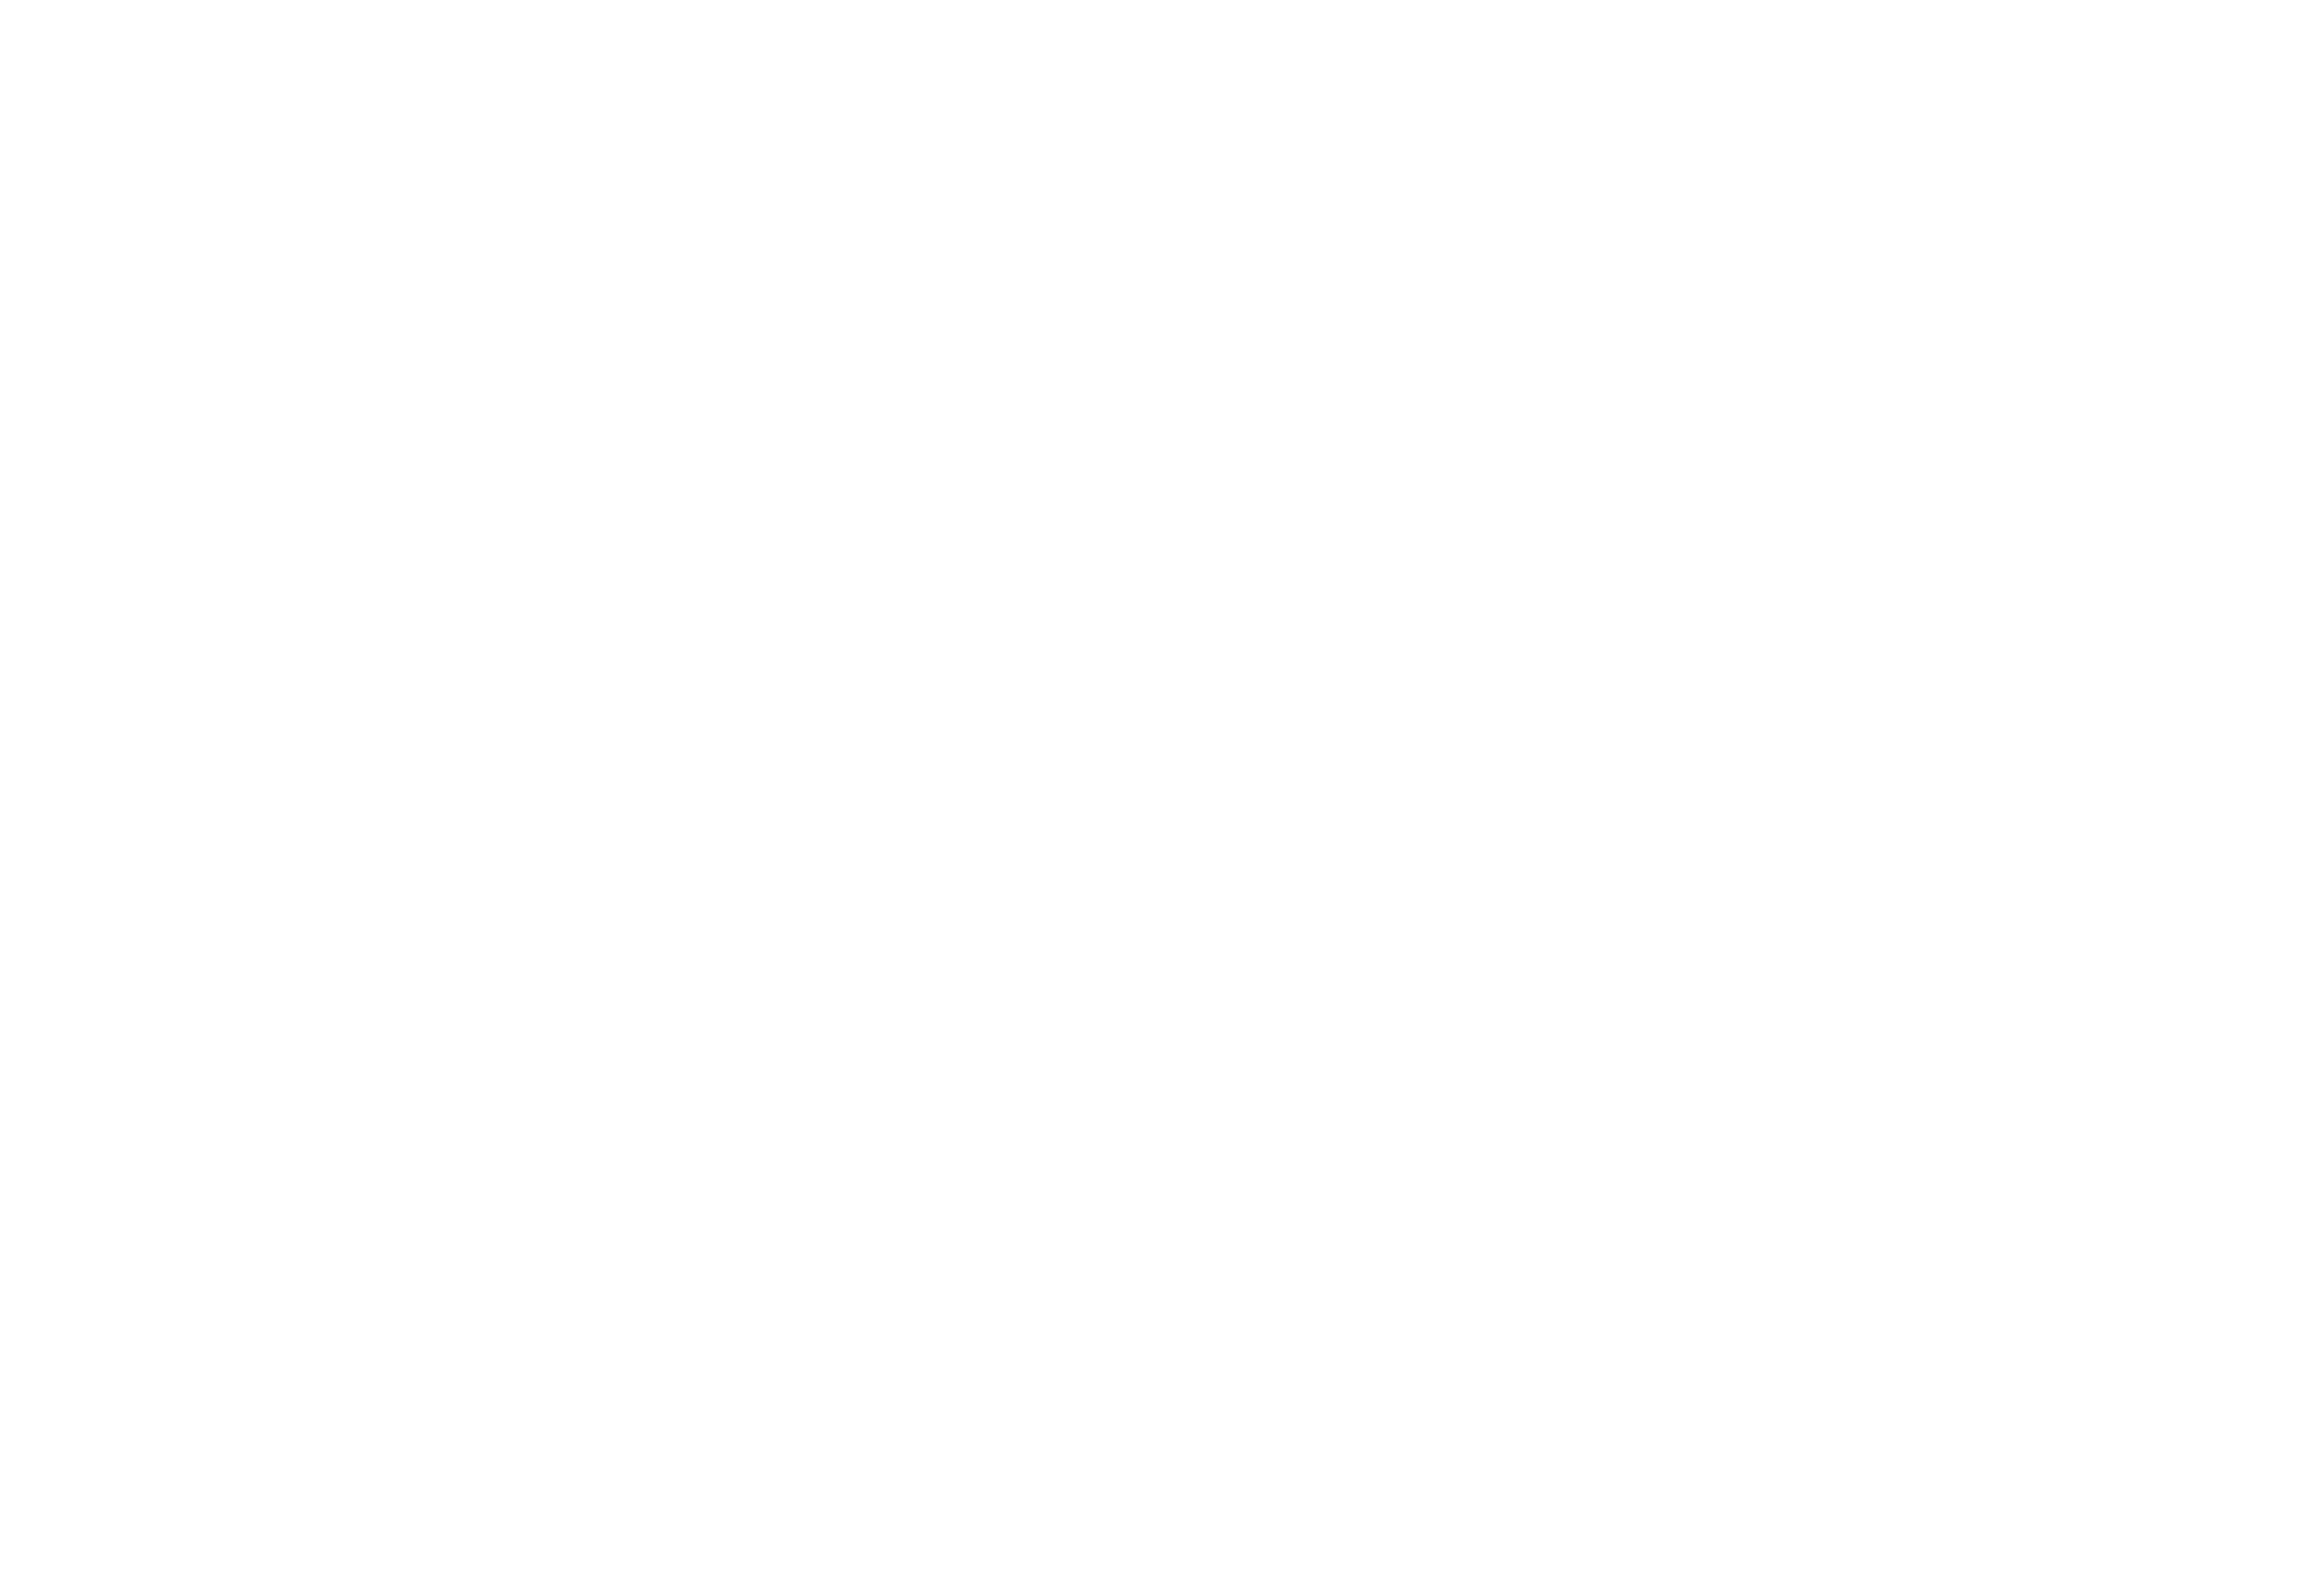 Canadian Association of Social Workers - Association canadienne des travailleuses et travailleurs sociaux